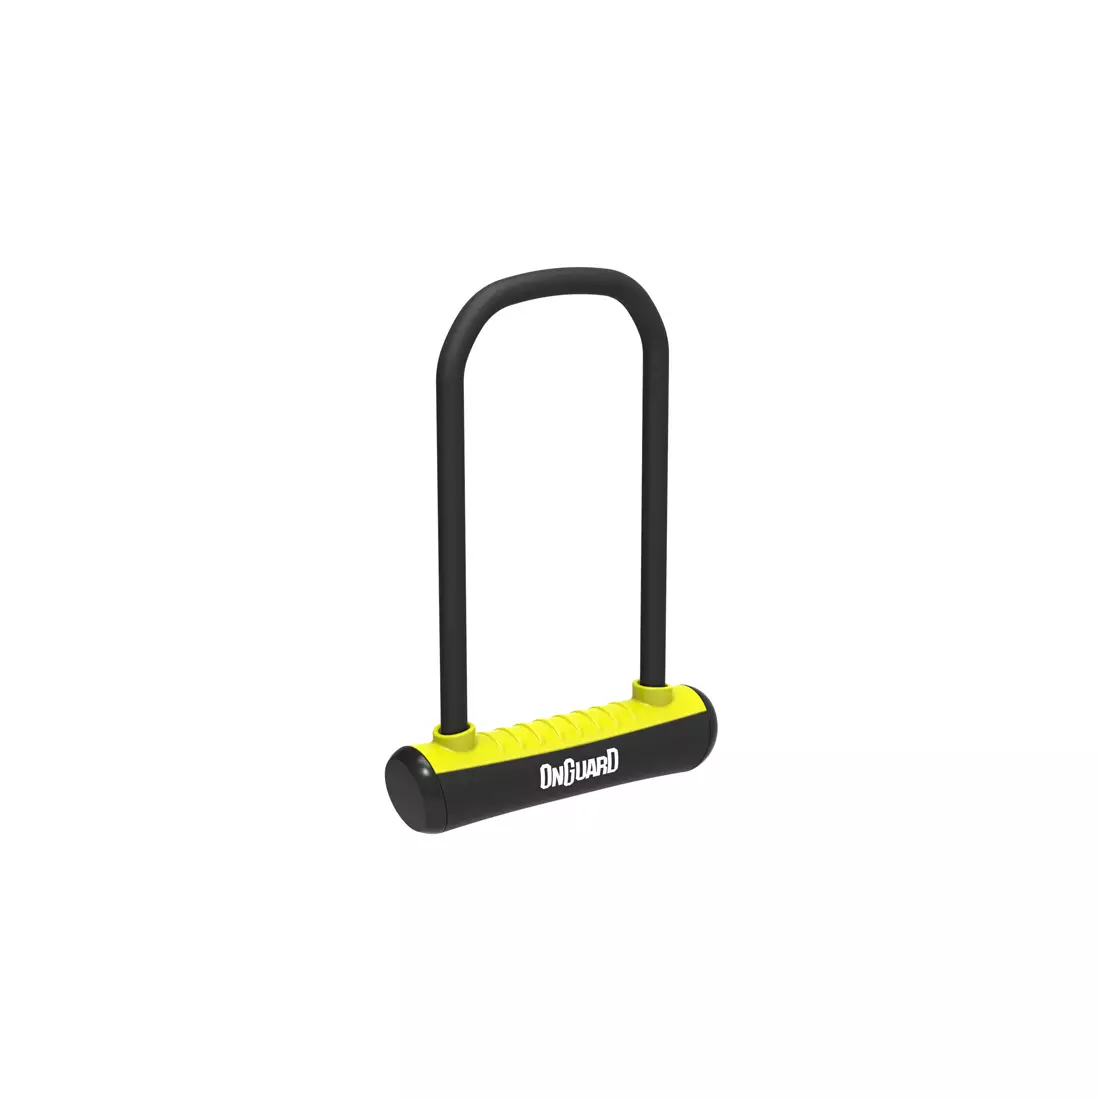 ONGUARD kerékpárzár Neon u-lock 292mm + 2 x kulcsok, sárga ONG-8152YL